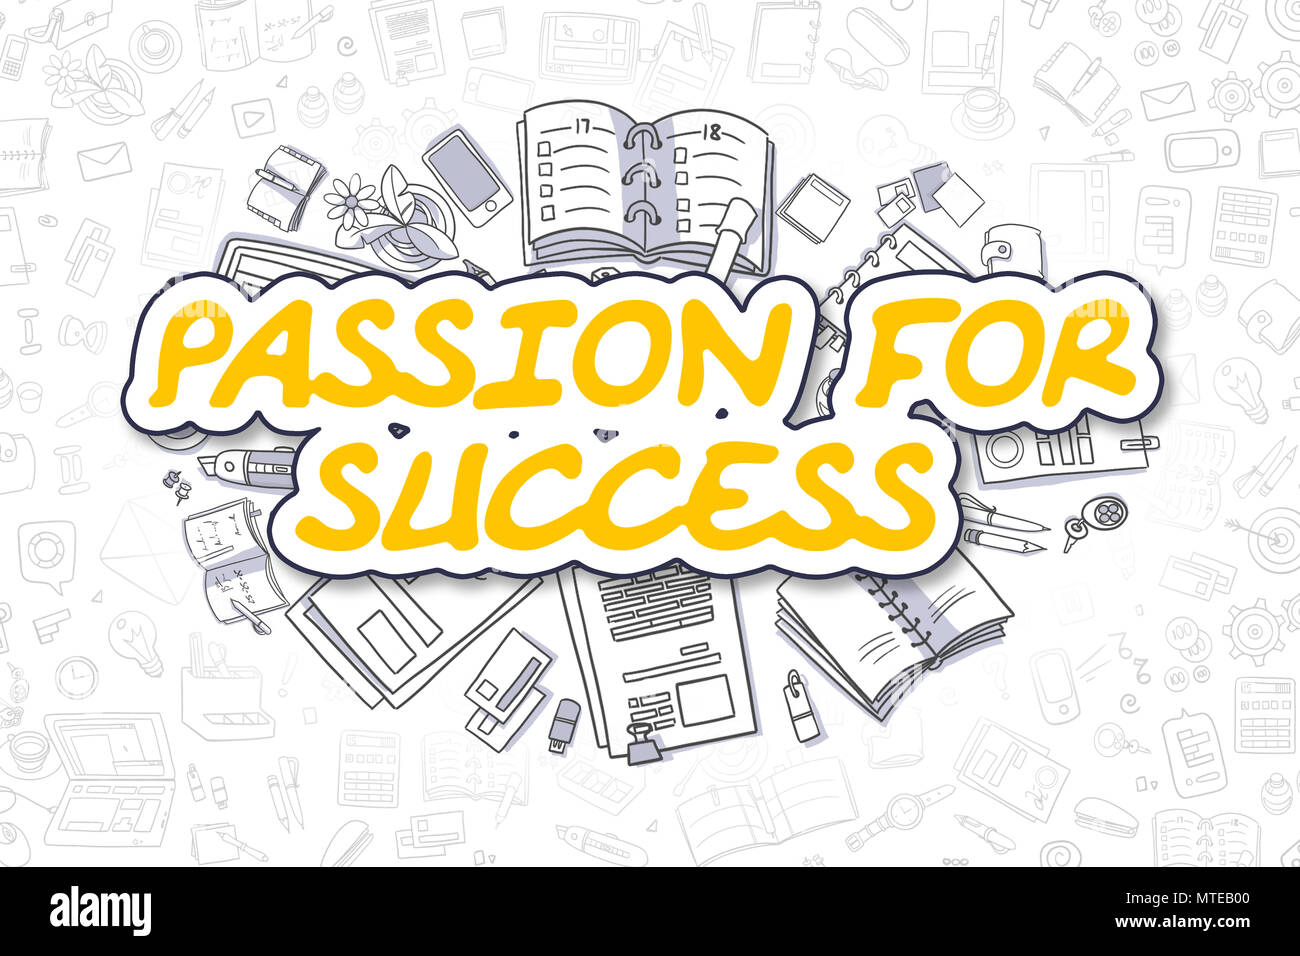 Passion pour le succès - Doodle mot jaune. Concept d'entreprise. Banque D'Images